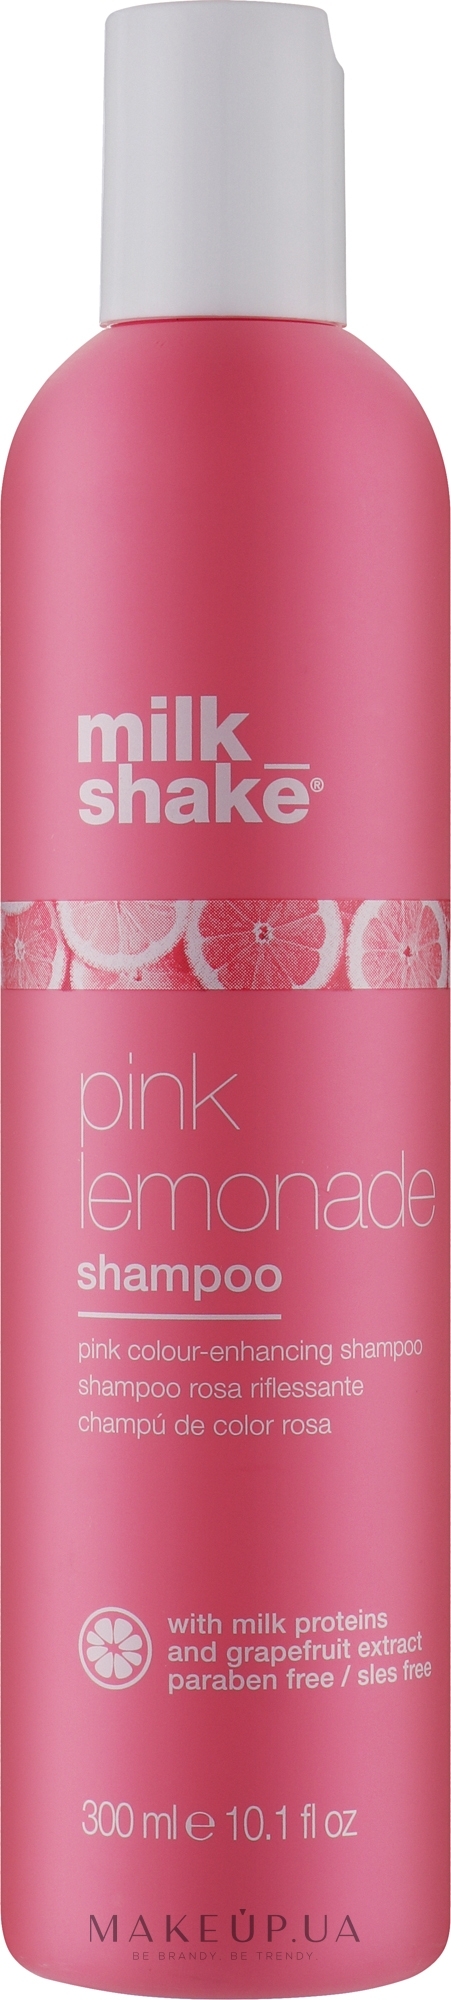 Шампунь для светлых волос - Milk_shake Pink Lemonade Shampoo  — фото 300ml